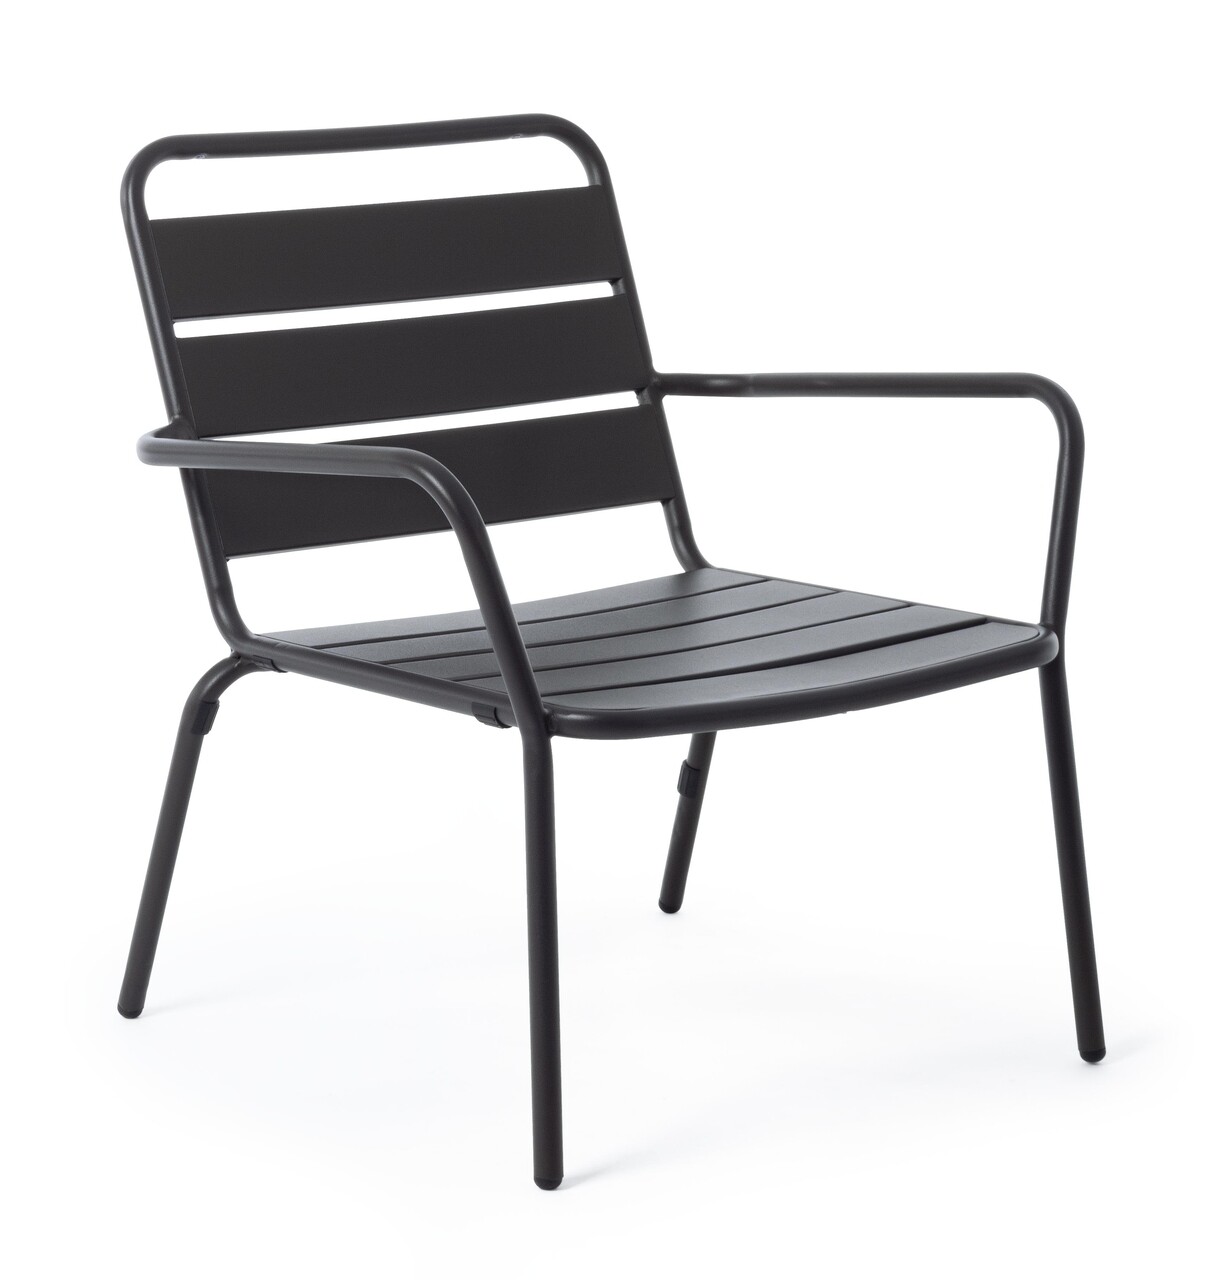 Marlyn Kerti szék, Bizzotto, 65x74x71 cm, acél külső kezeléssel, szén